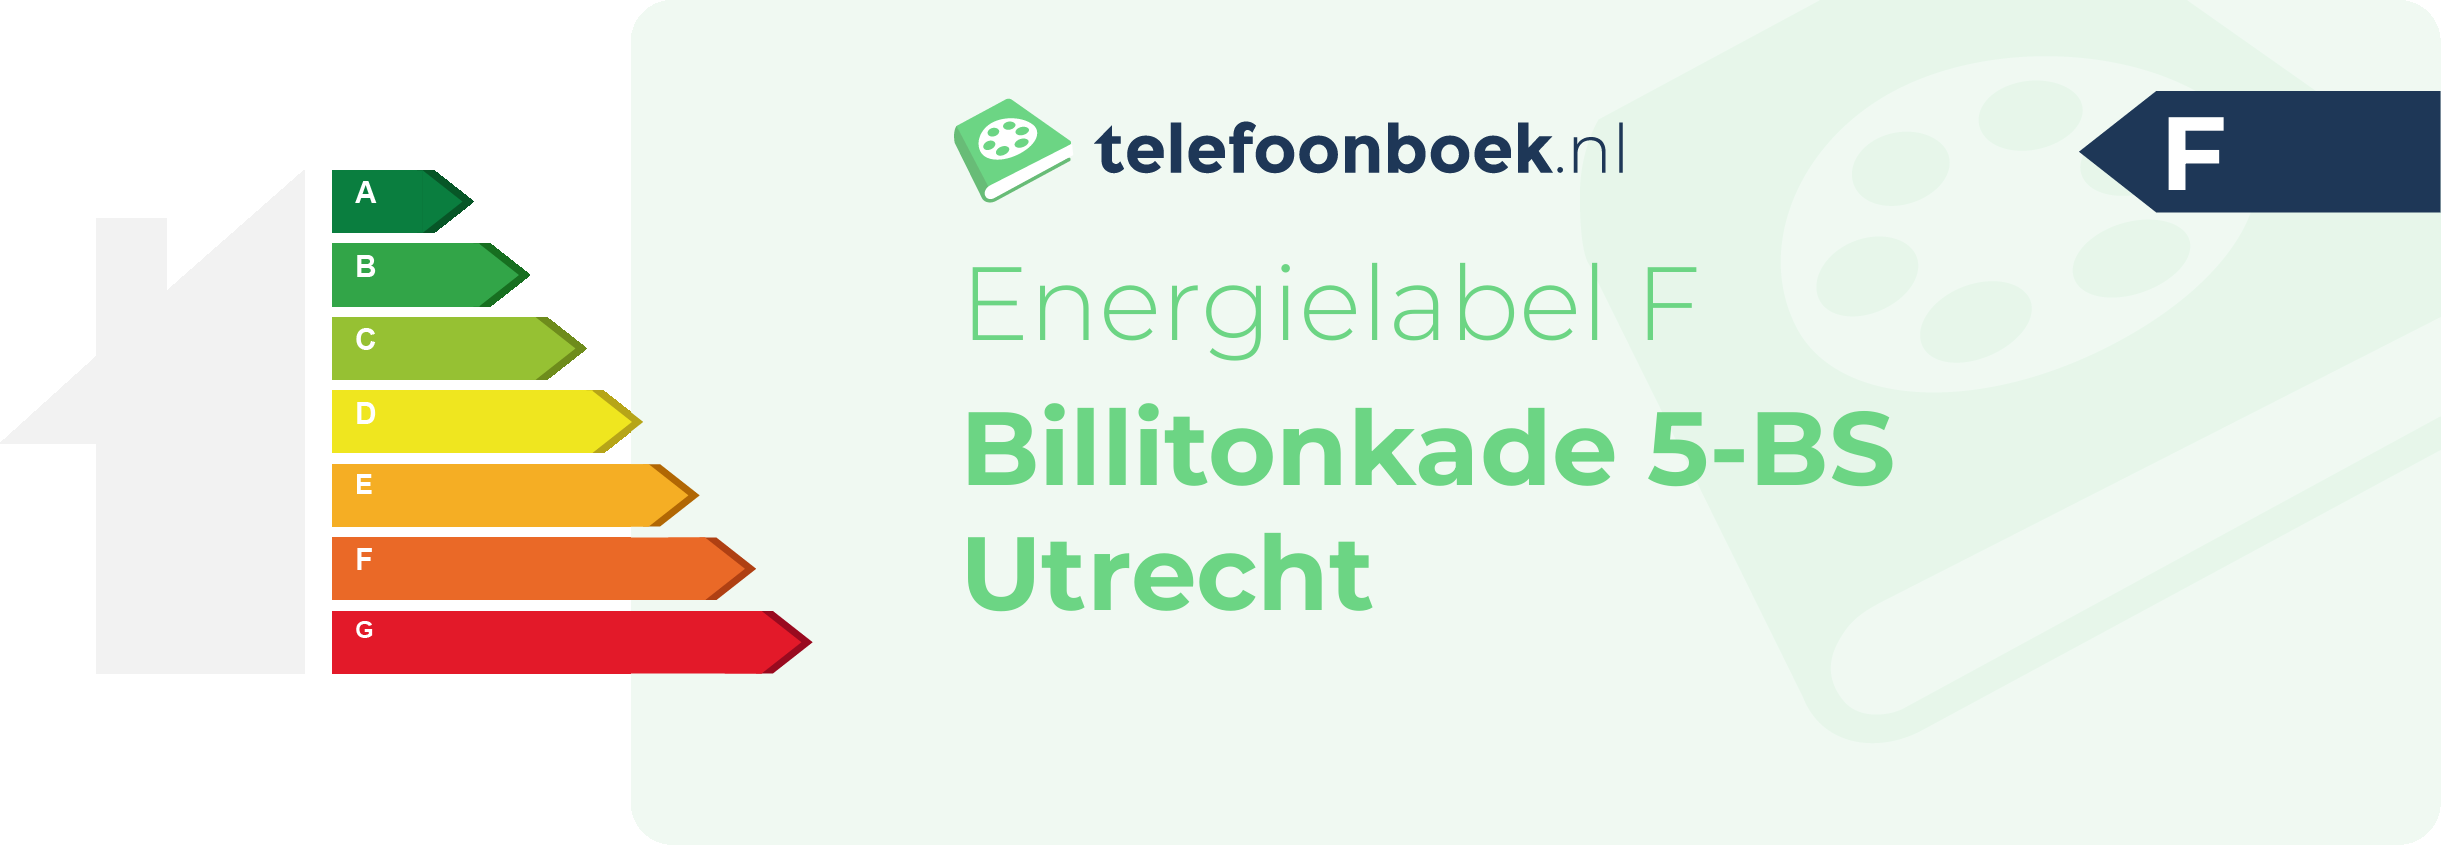 Energielabel Billitonkade 5-BS Utrecht